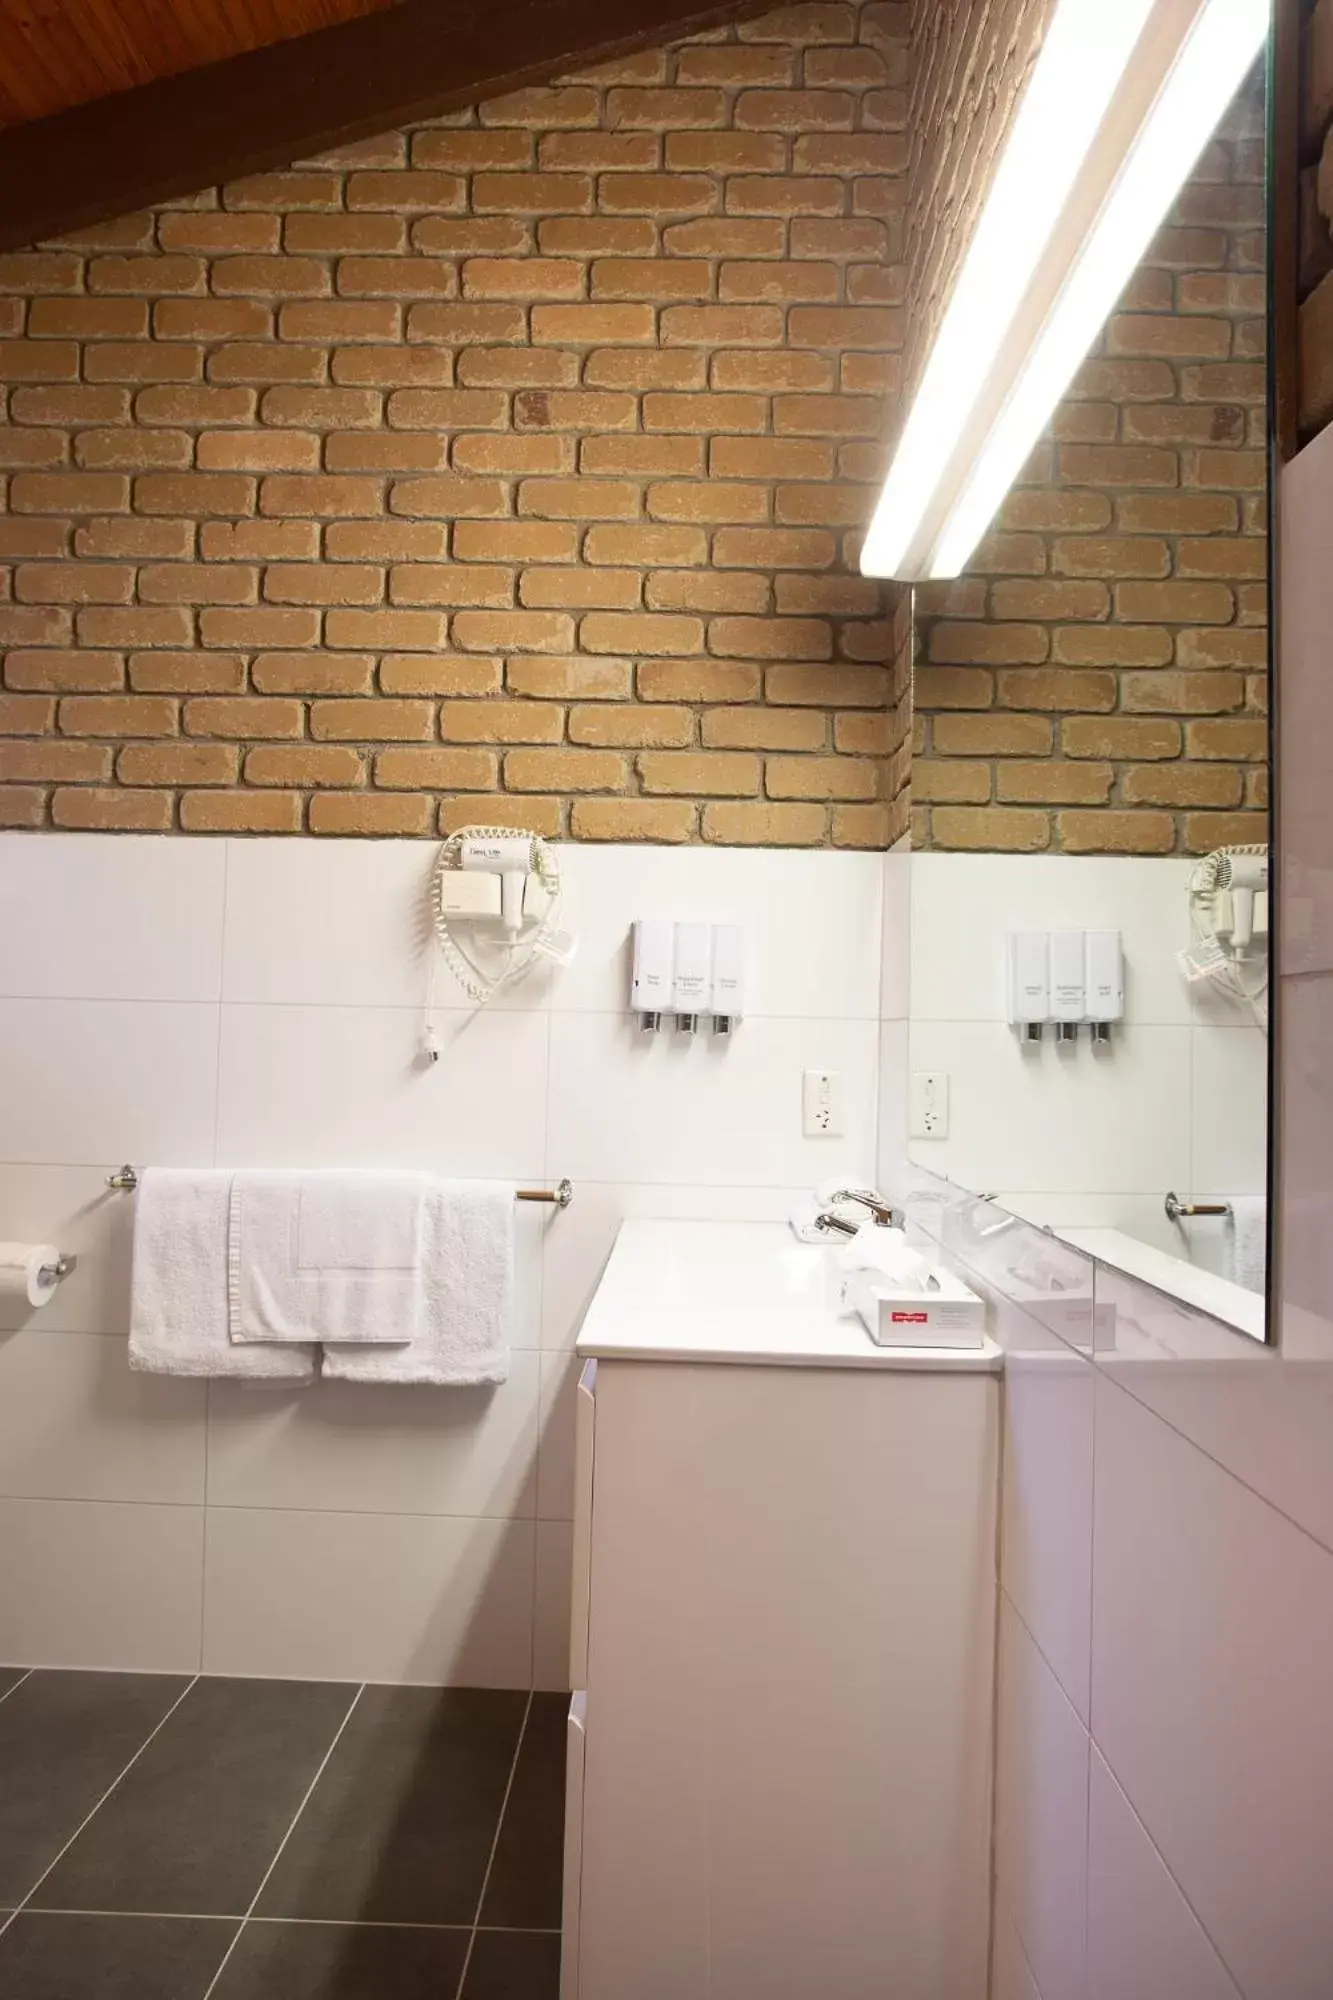 Bathroom in Goldfields Motel